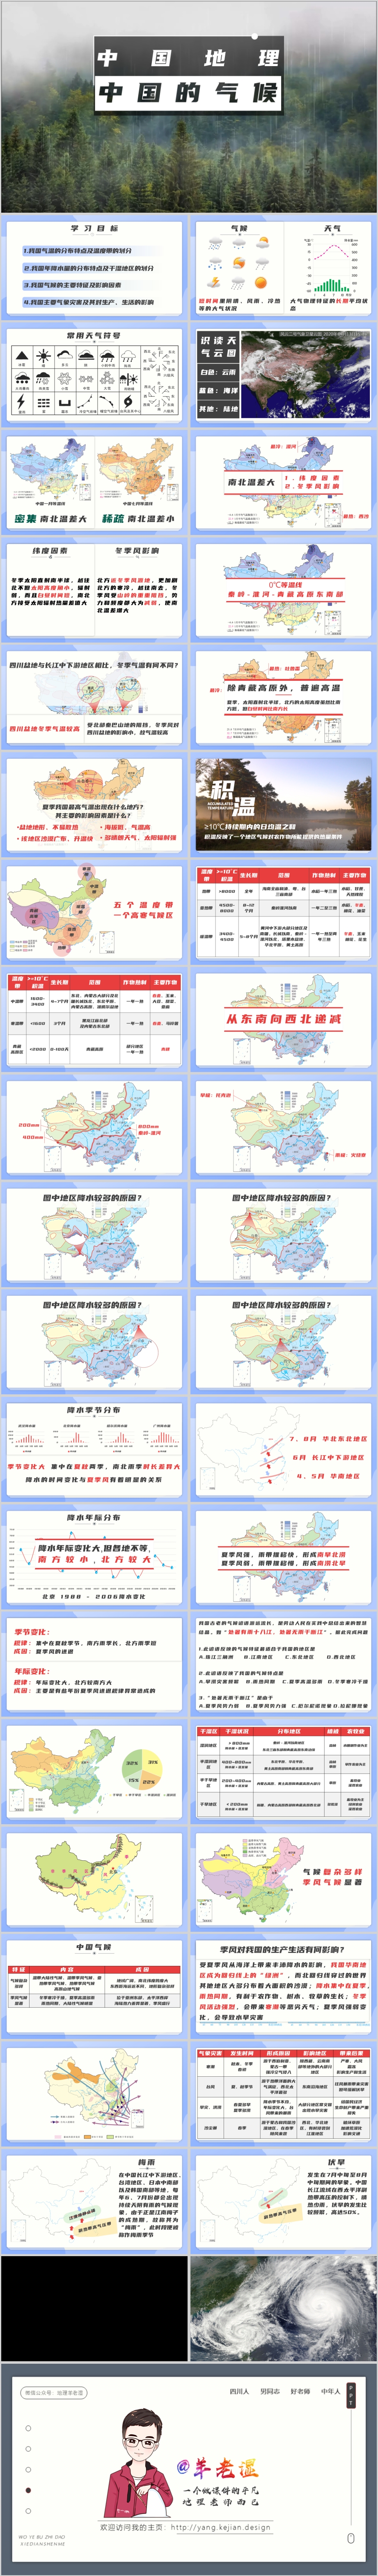 中国的气候.jpg